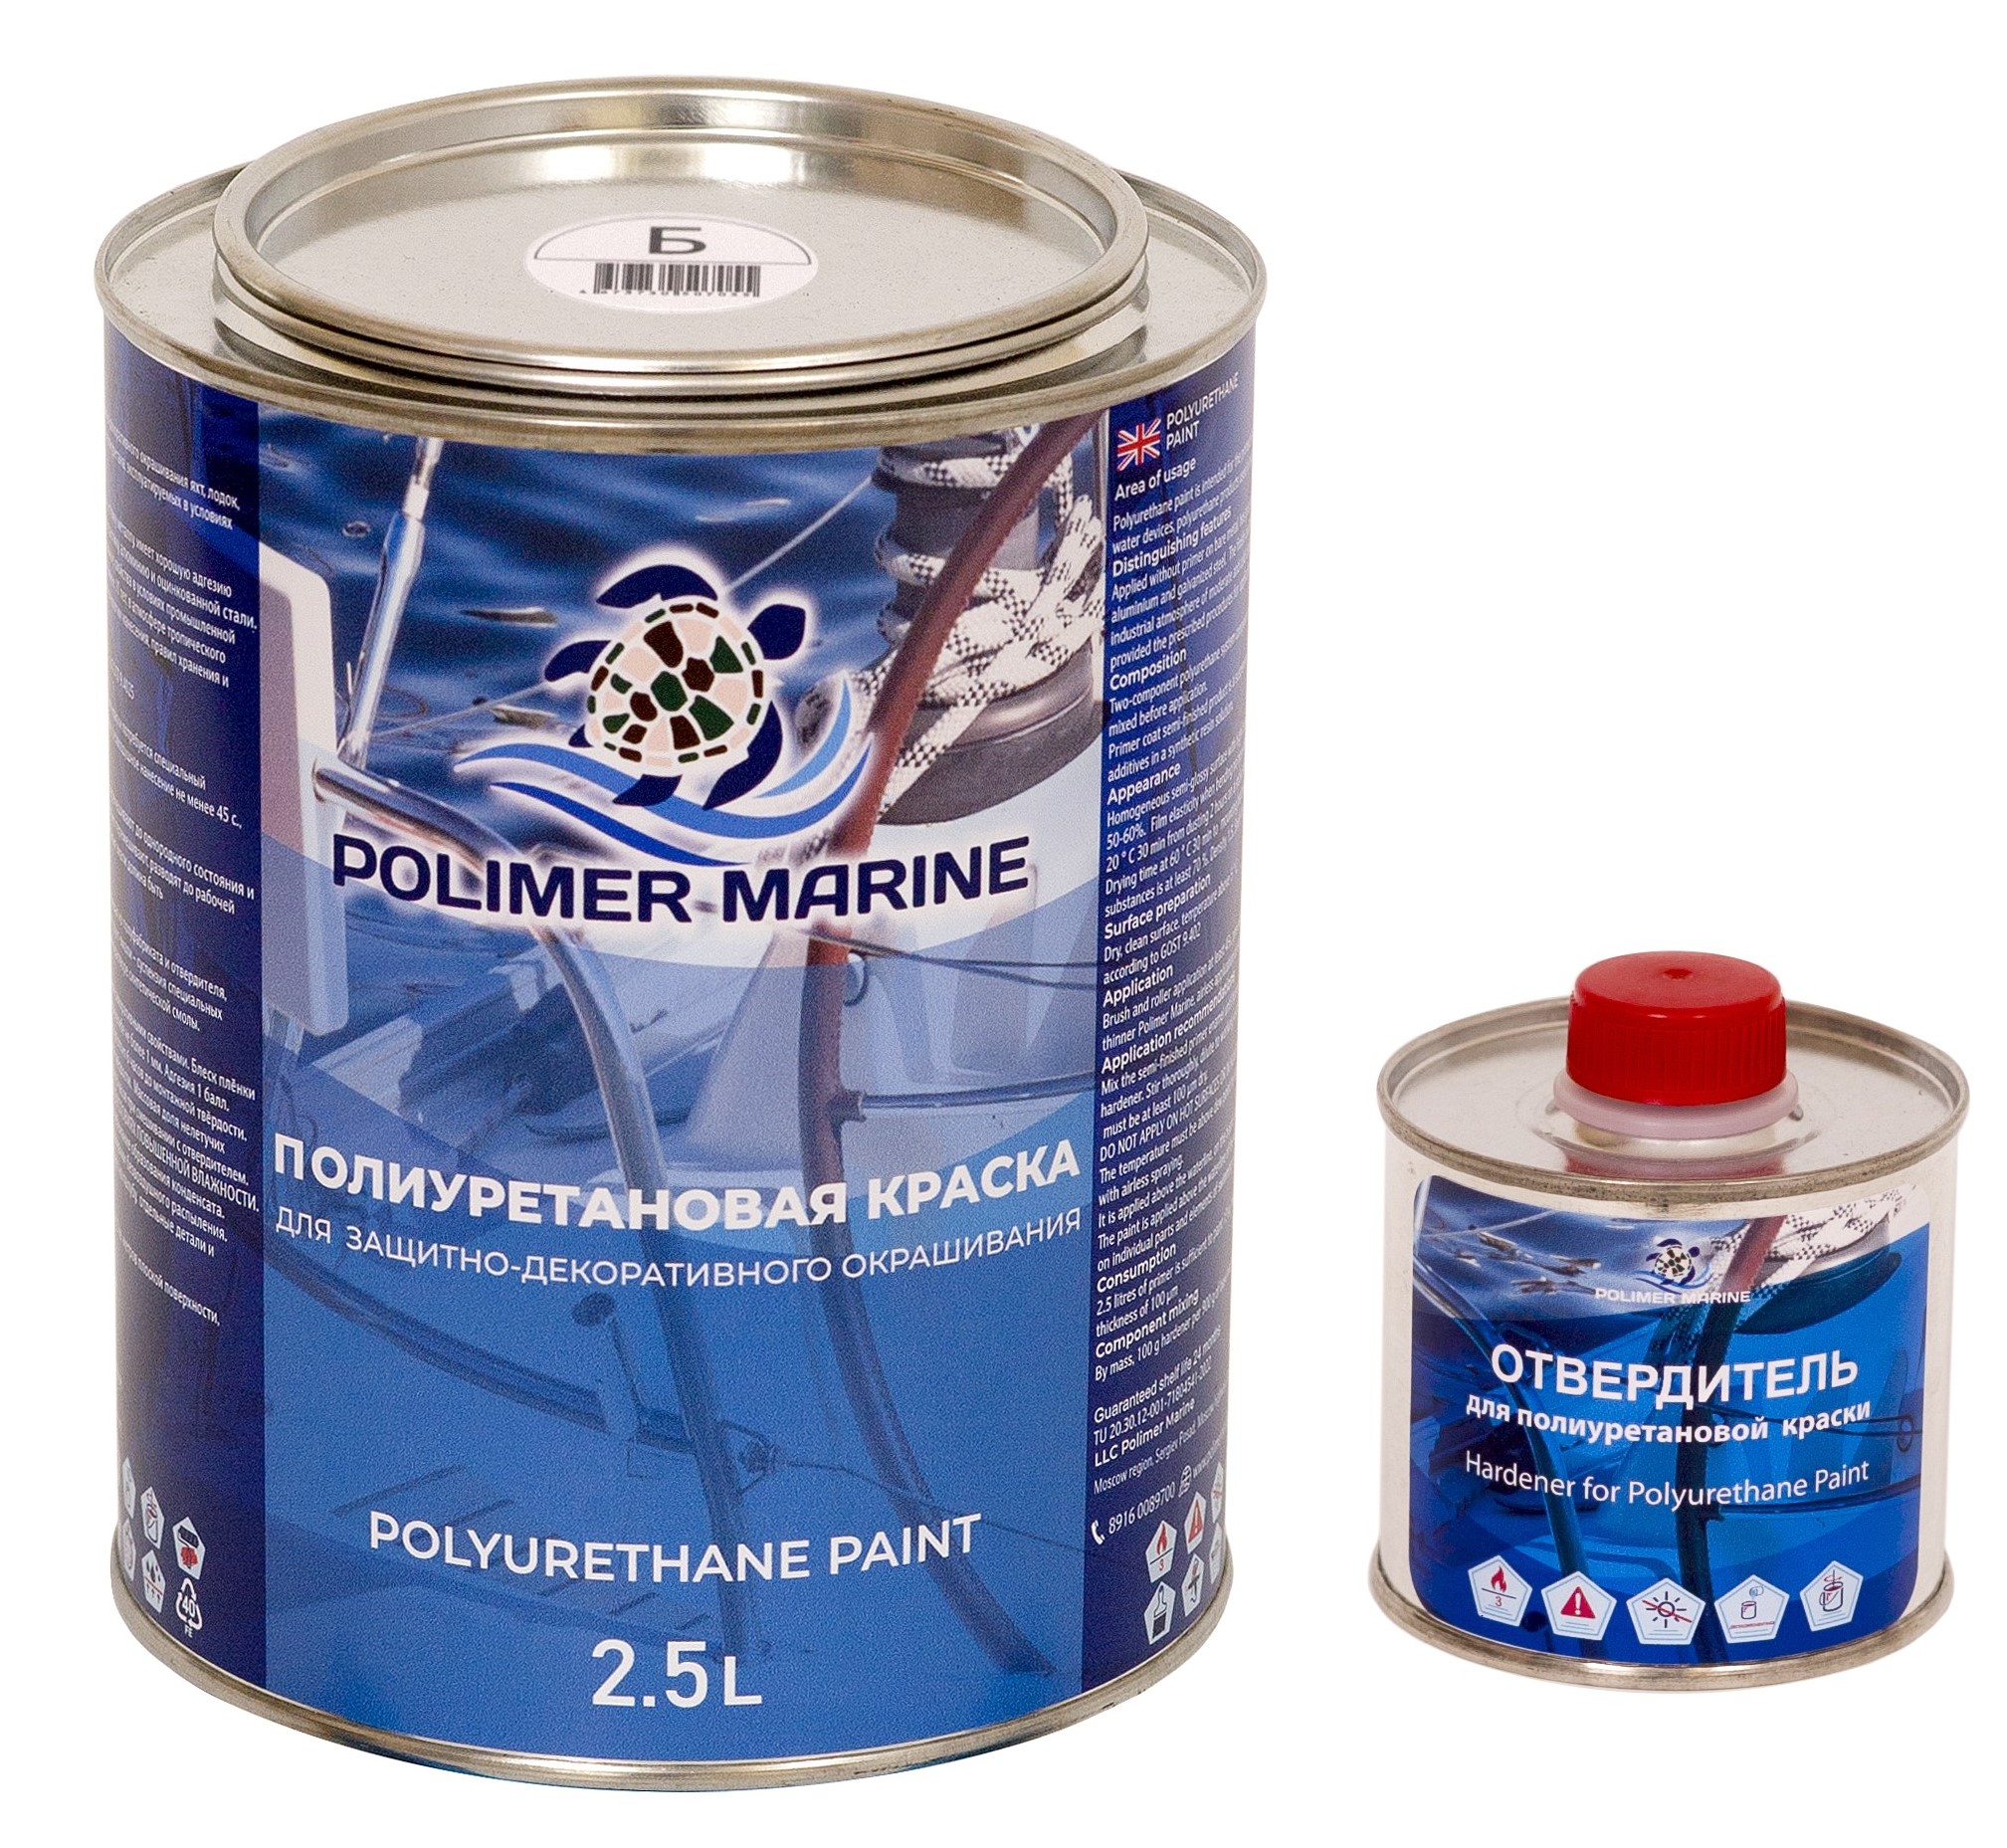 Полиуретановая краска Polimer Marine КП Кп25б белая 2.5 л двухкомпонентная 2К полиуретановая краска серая polimer marine двухкомпонентная 2к